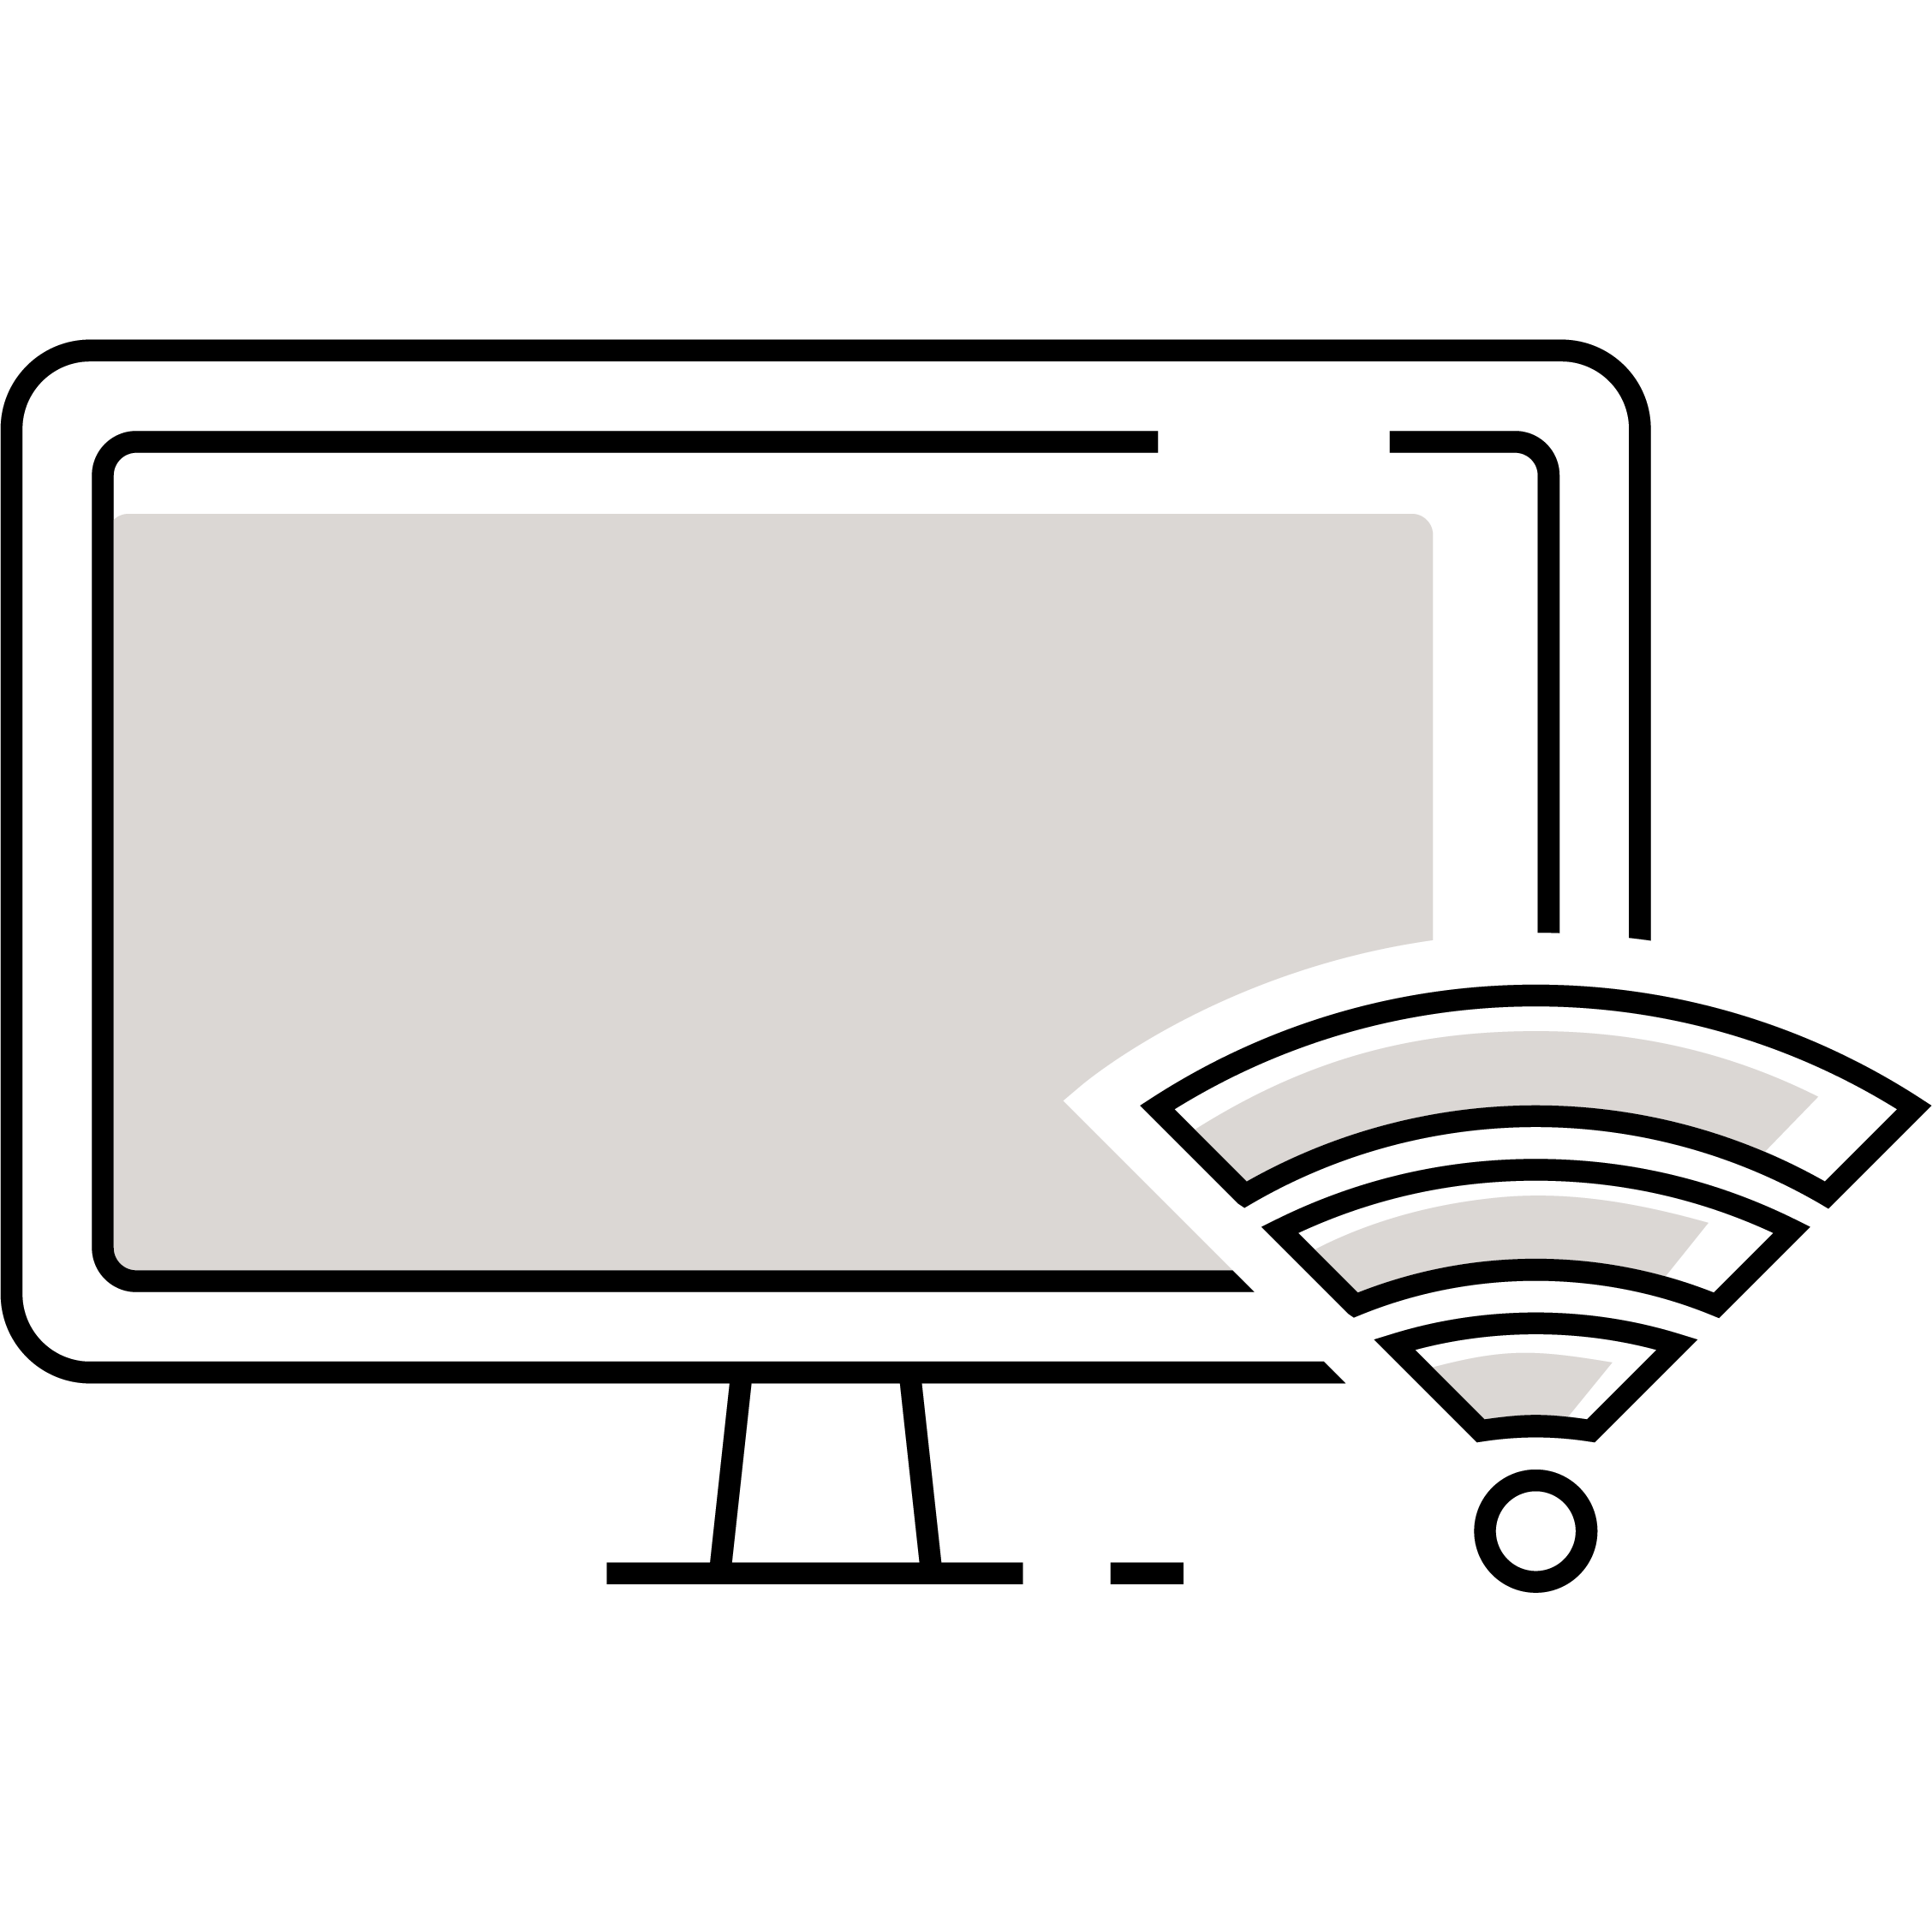 Câble et Internet